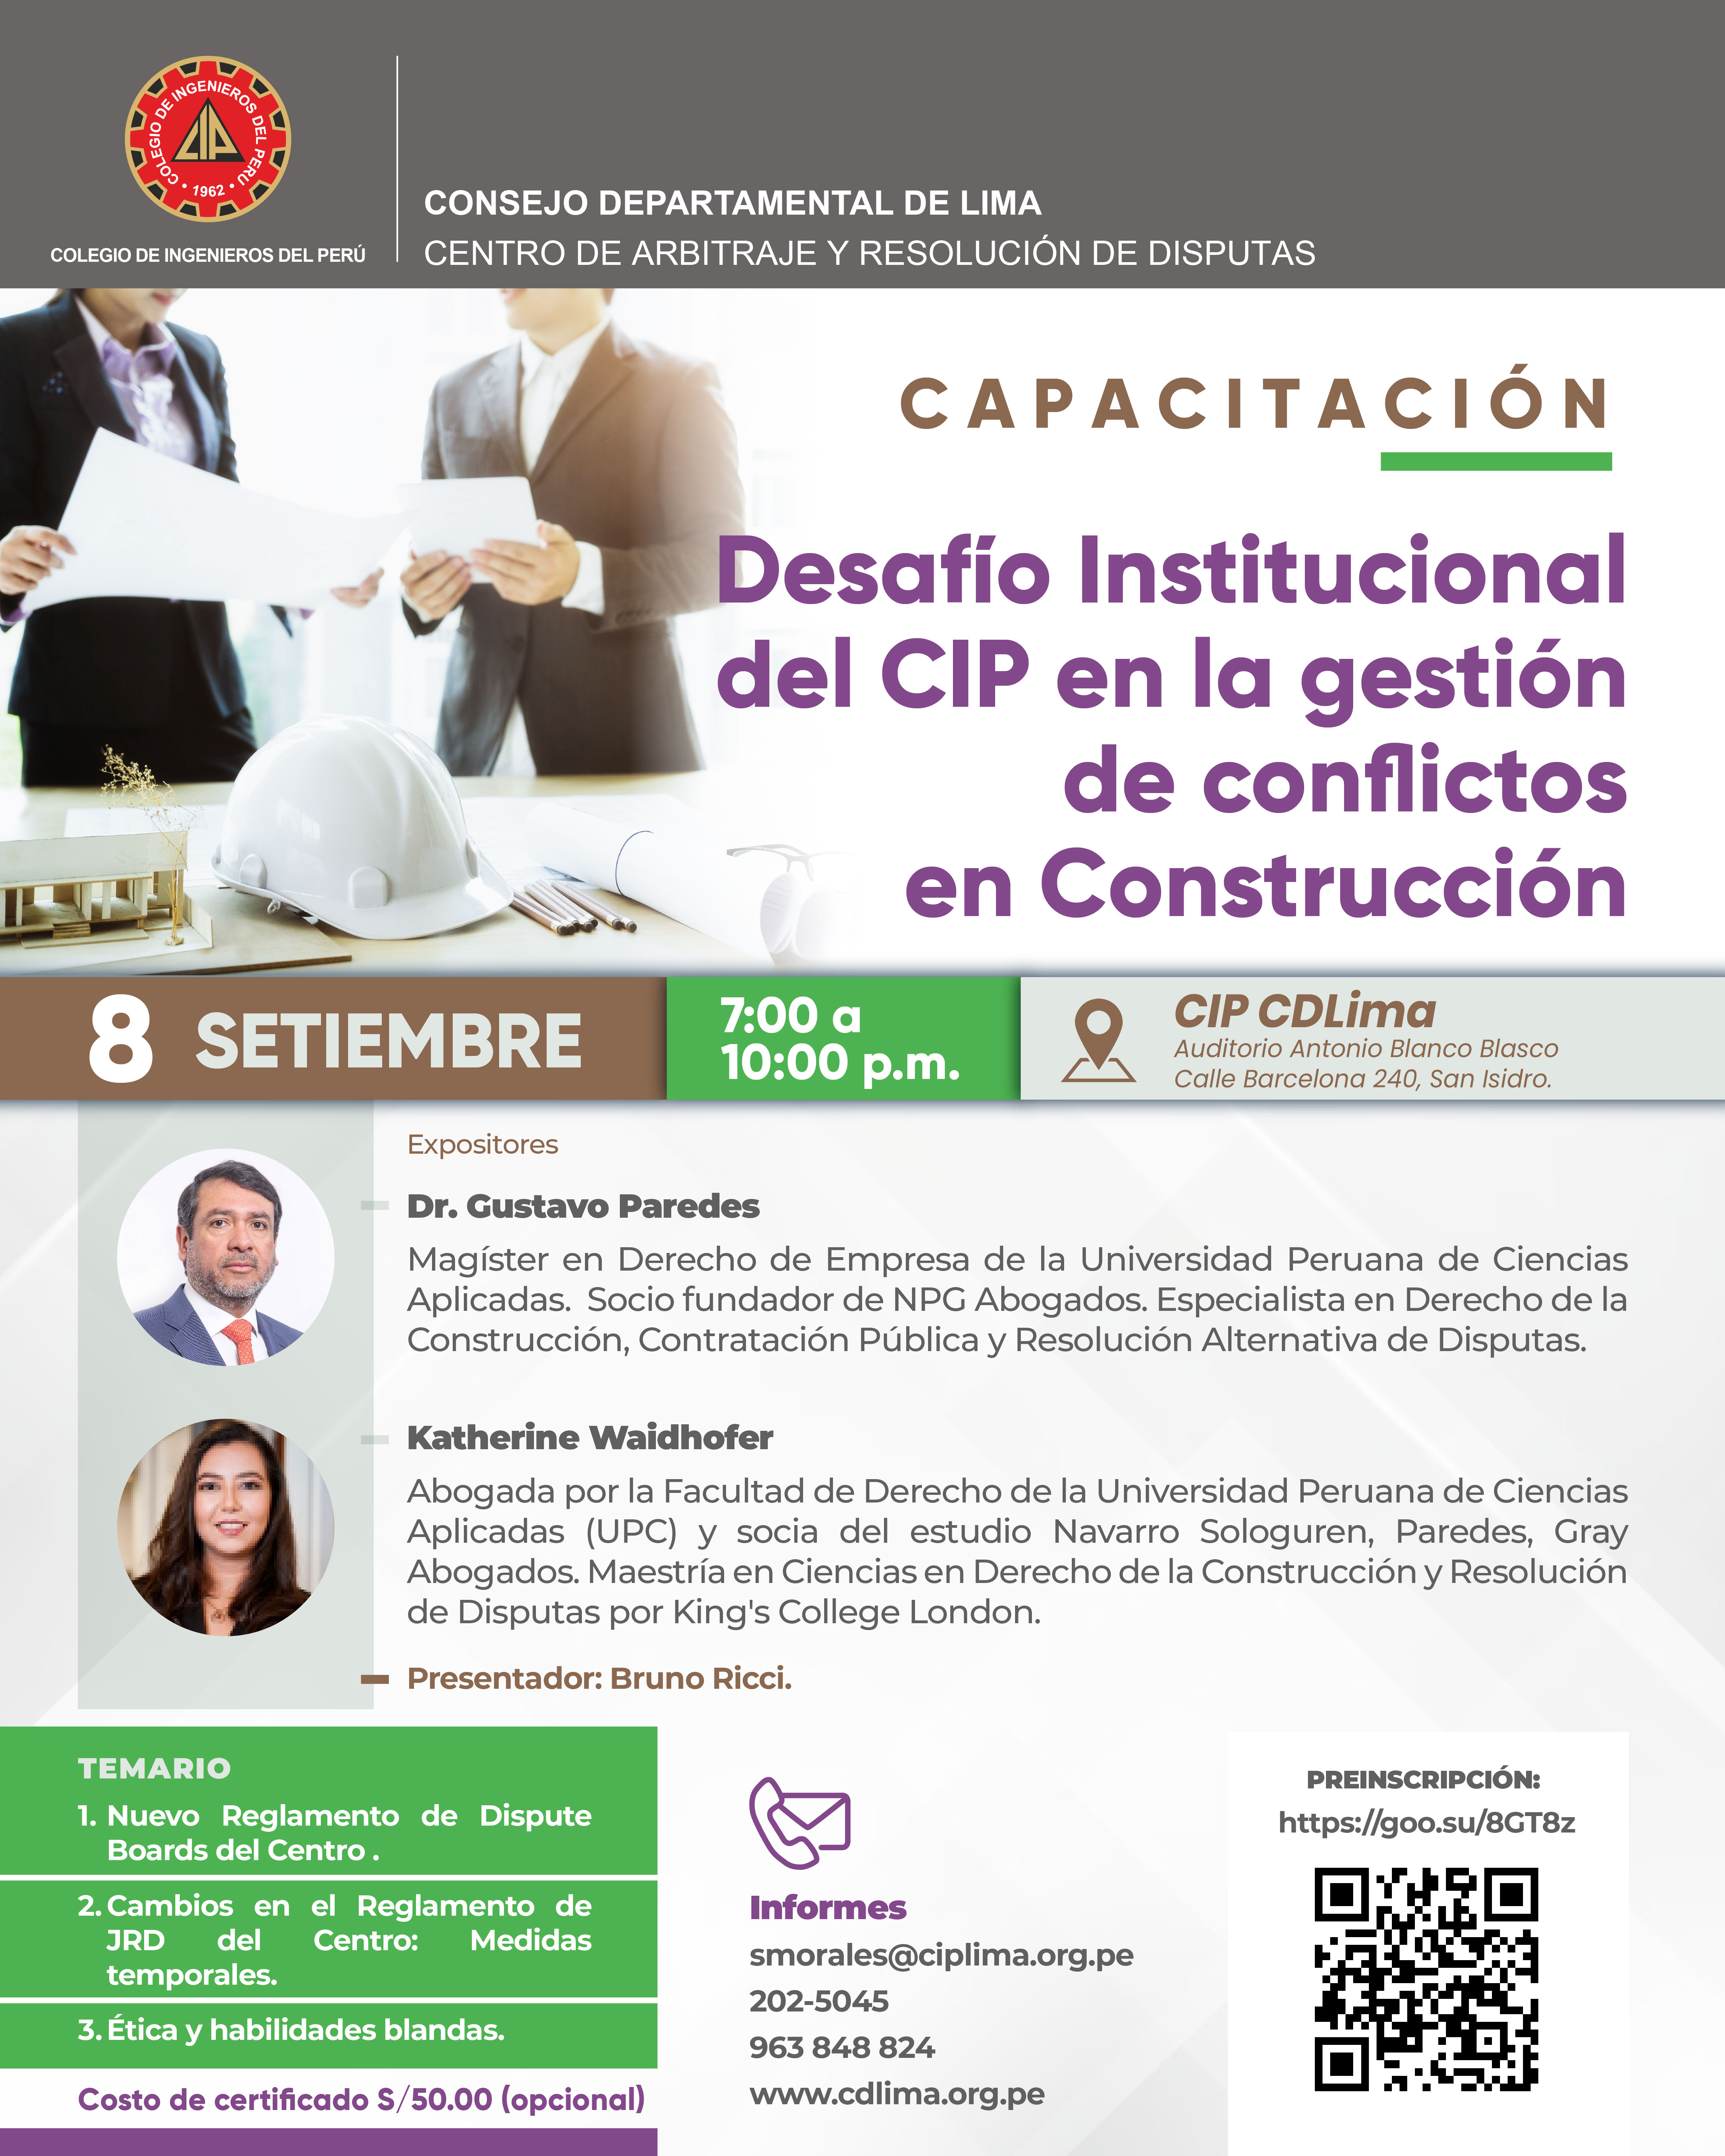 Desafío Institucional del CIP en la Gestión de Conflictos en Construcción